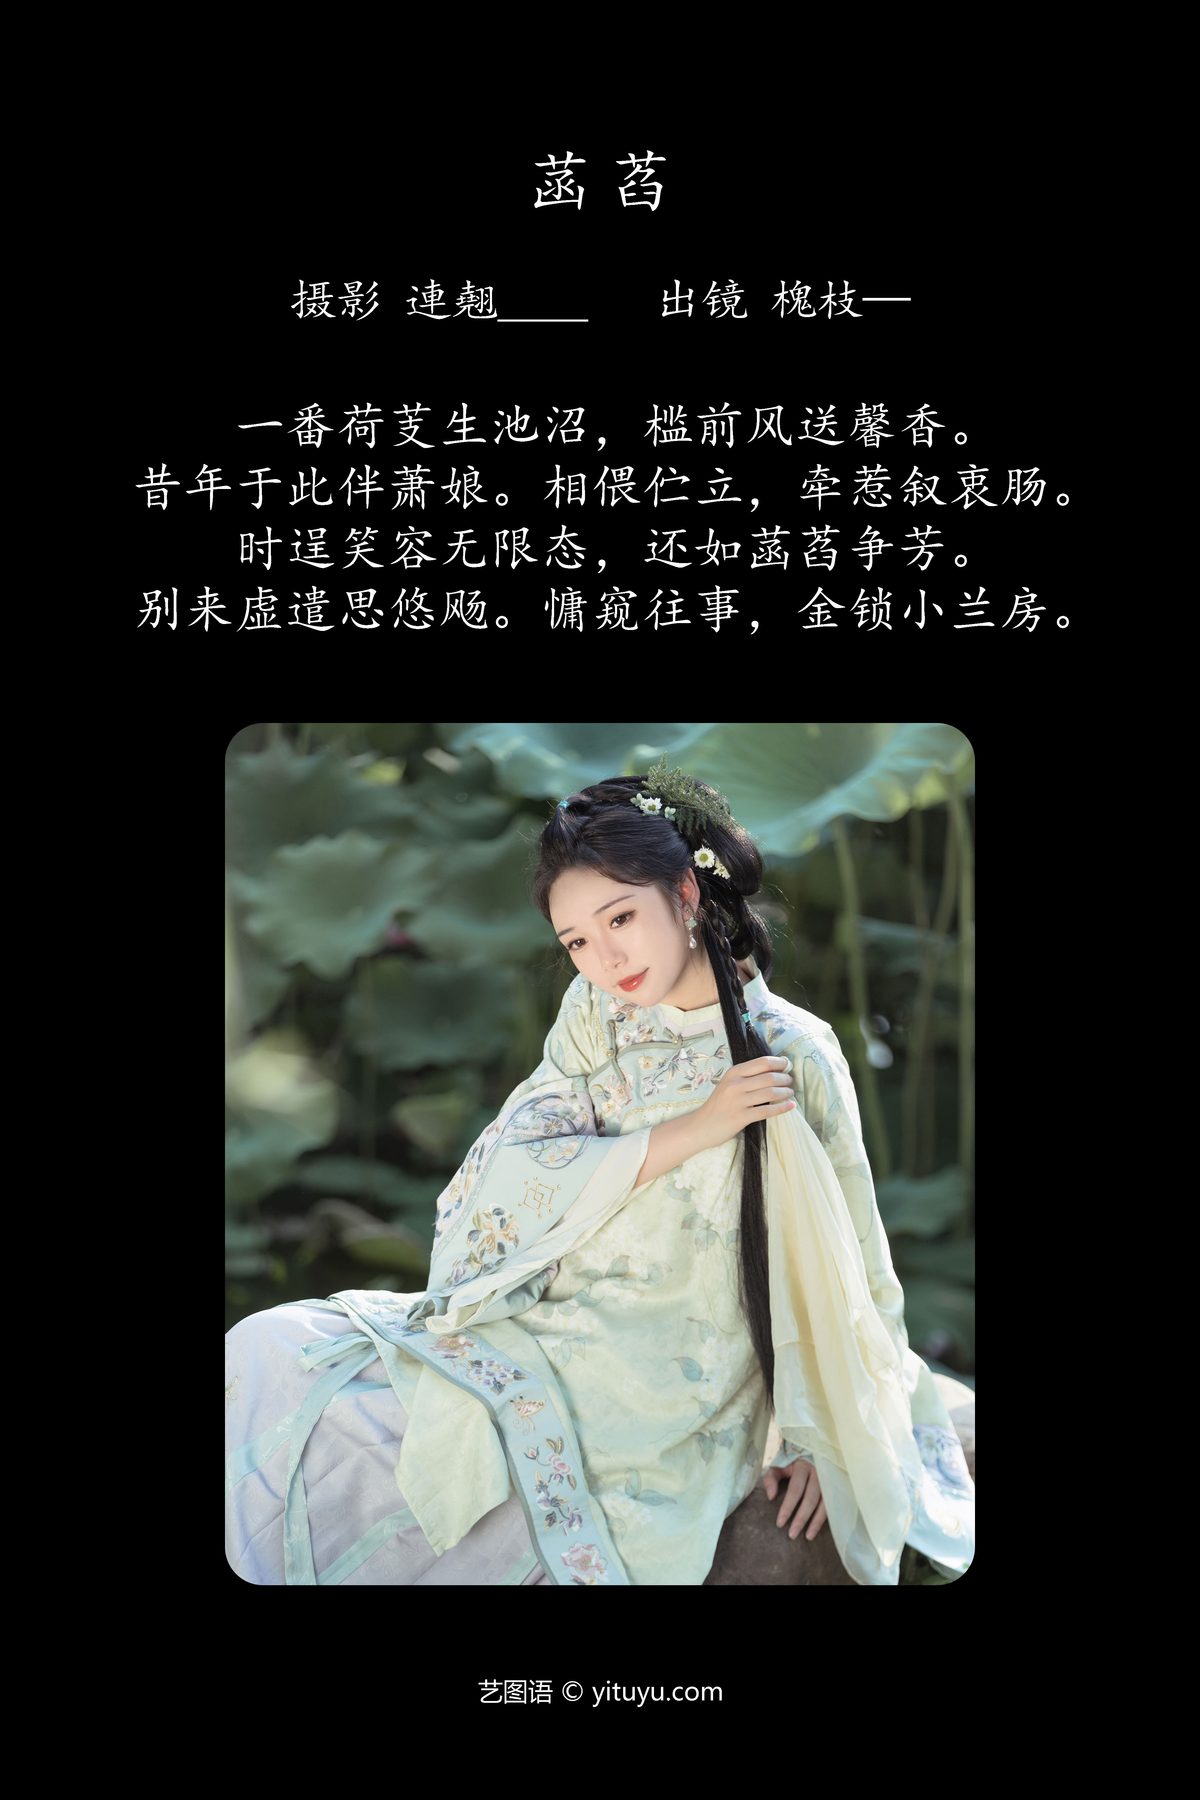 YiTuYu艺图语 Vol 4690 Huai Zhi 0001 7949503832.jpg